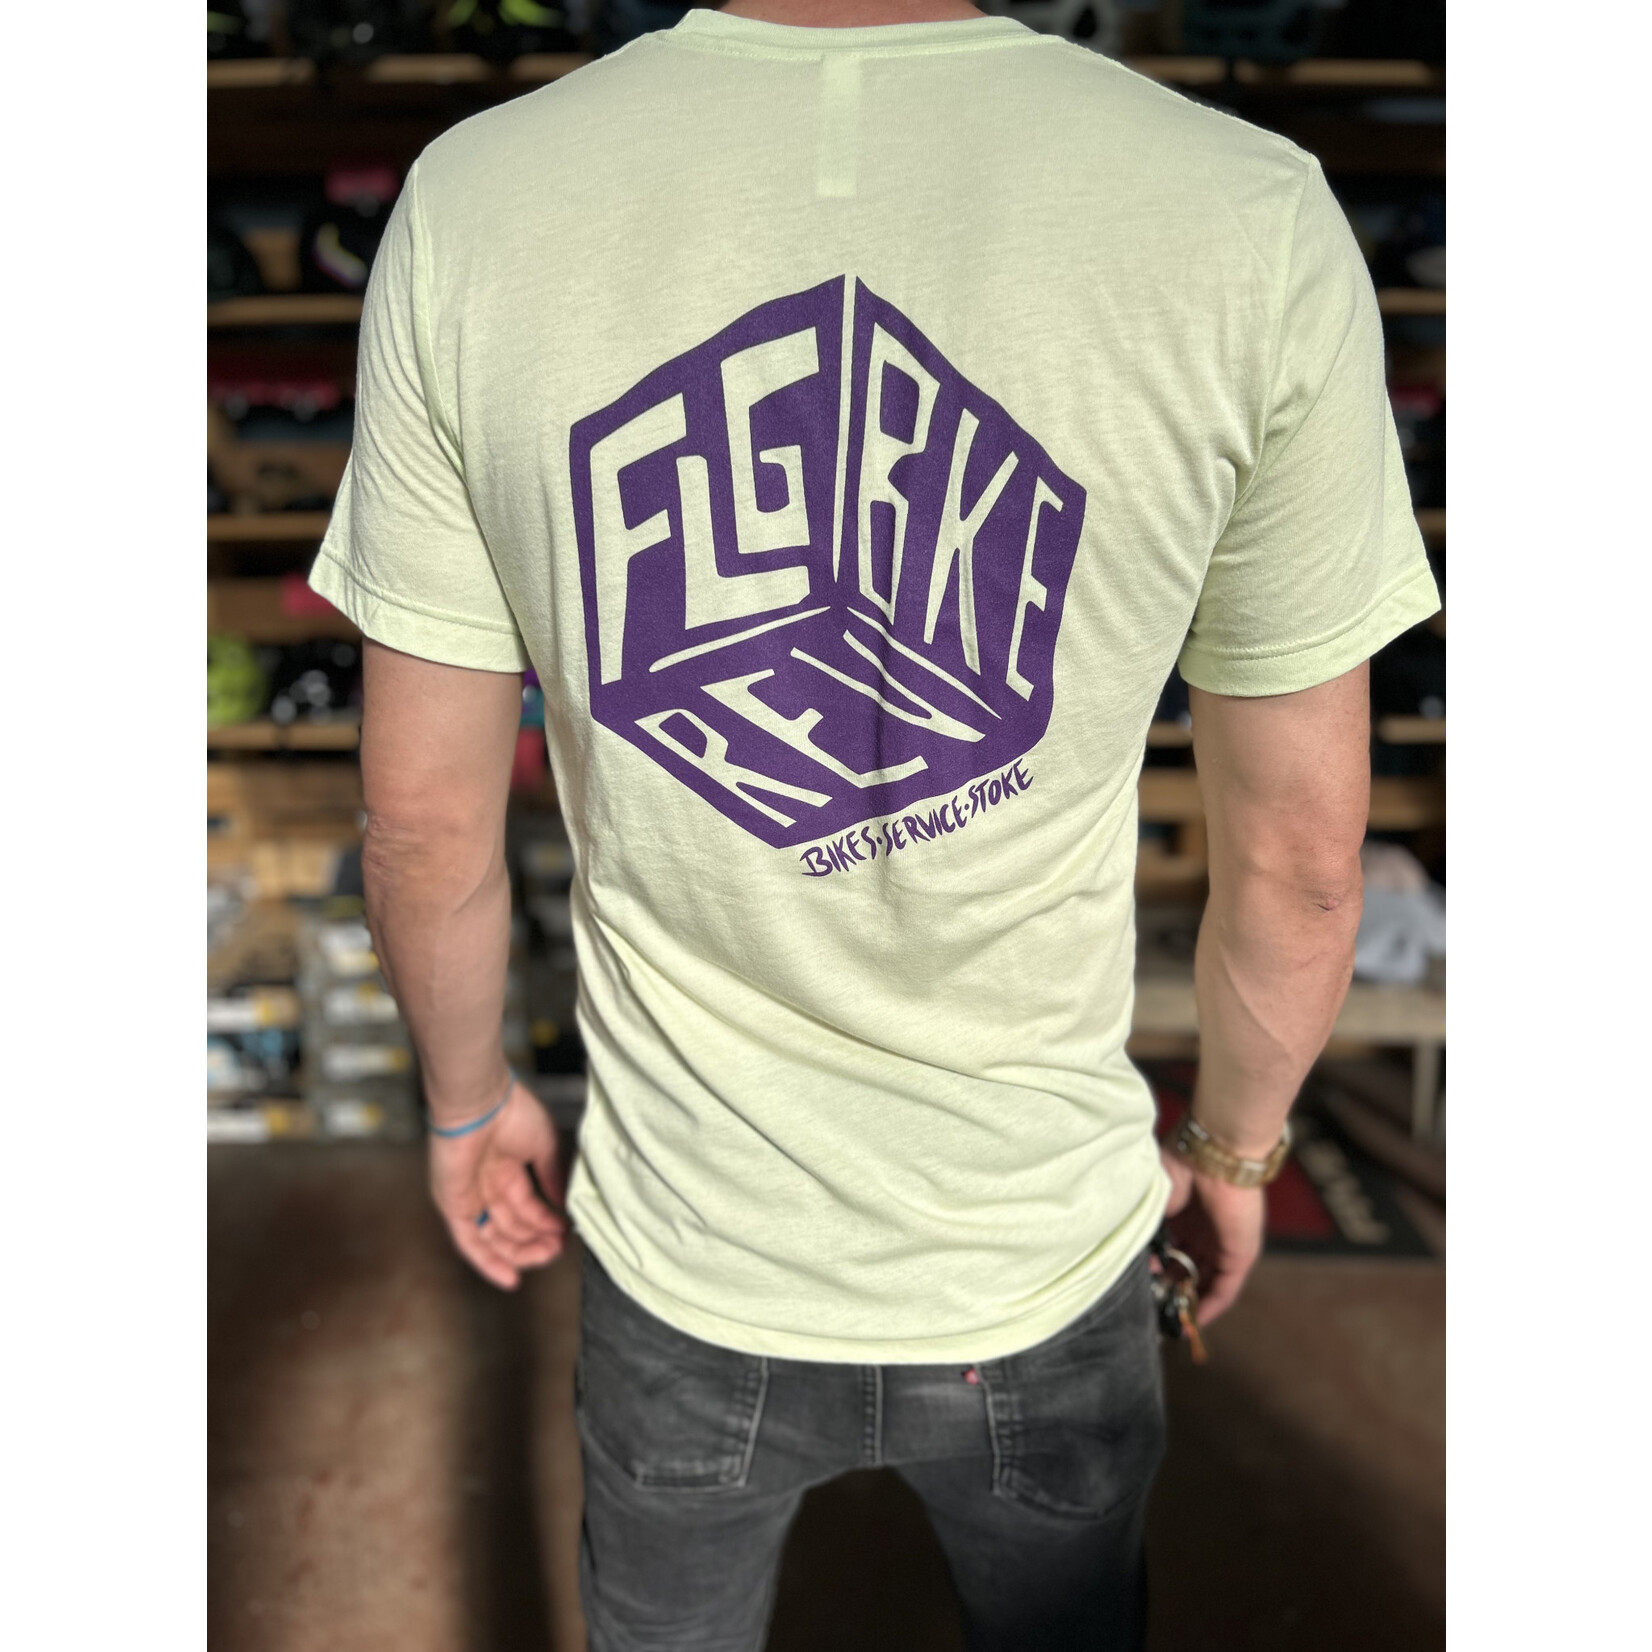 Flag Bike Rev FBR GameCube Tee Shirt